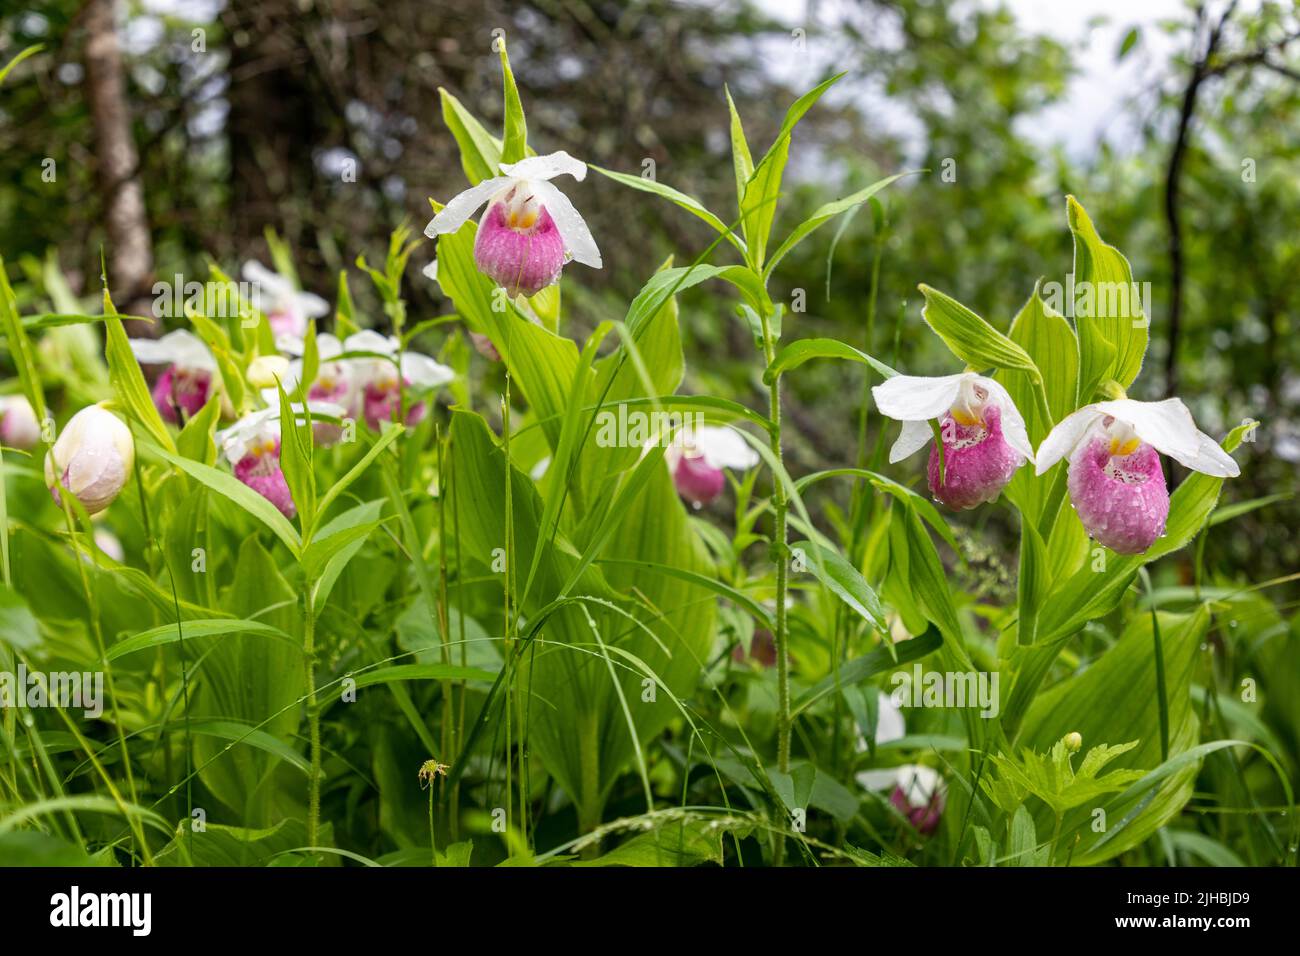 Le Slipper Lady est une espèce sauvage de fleurs d'orchidées qui poussent dans la région sauvage du Minnesota Northwoods Banque D'Images